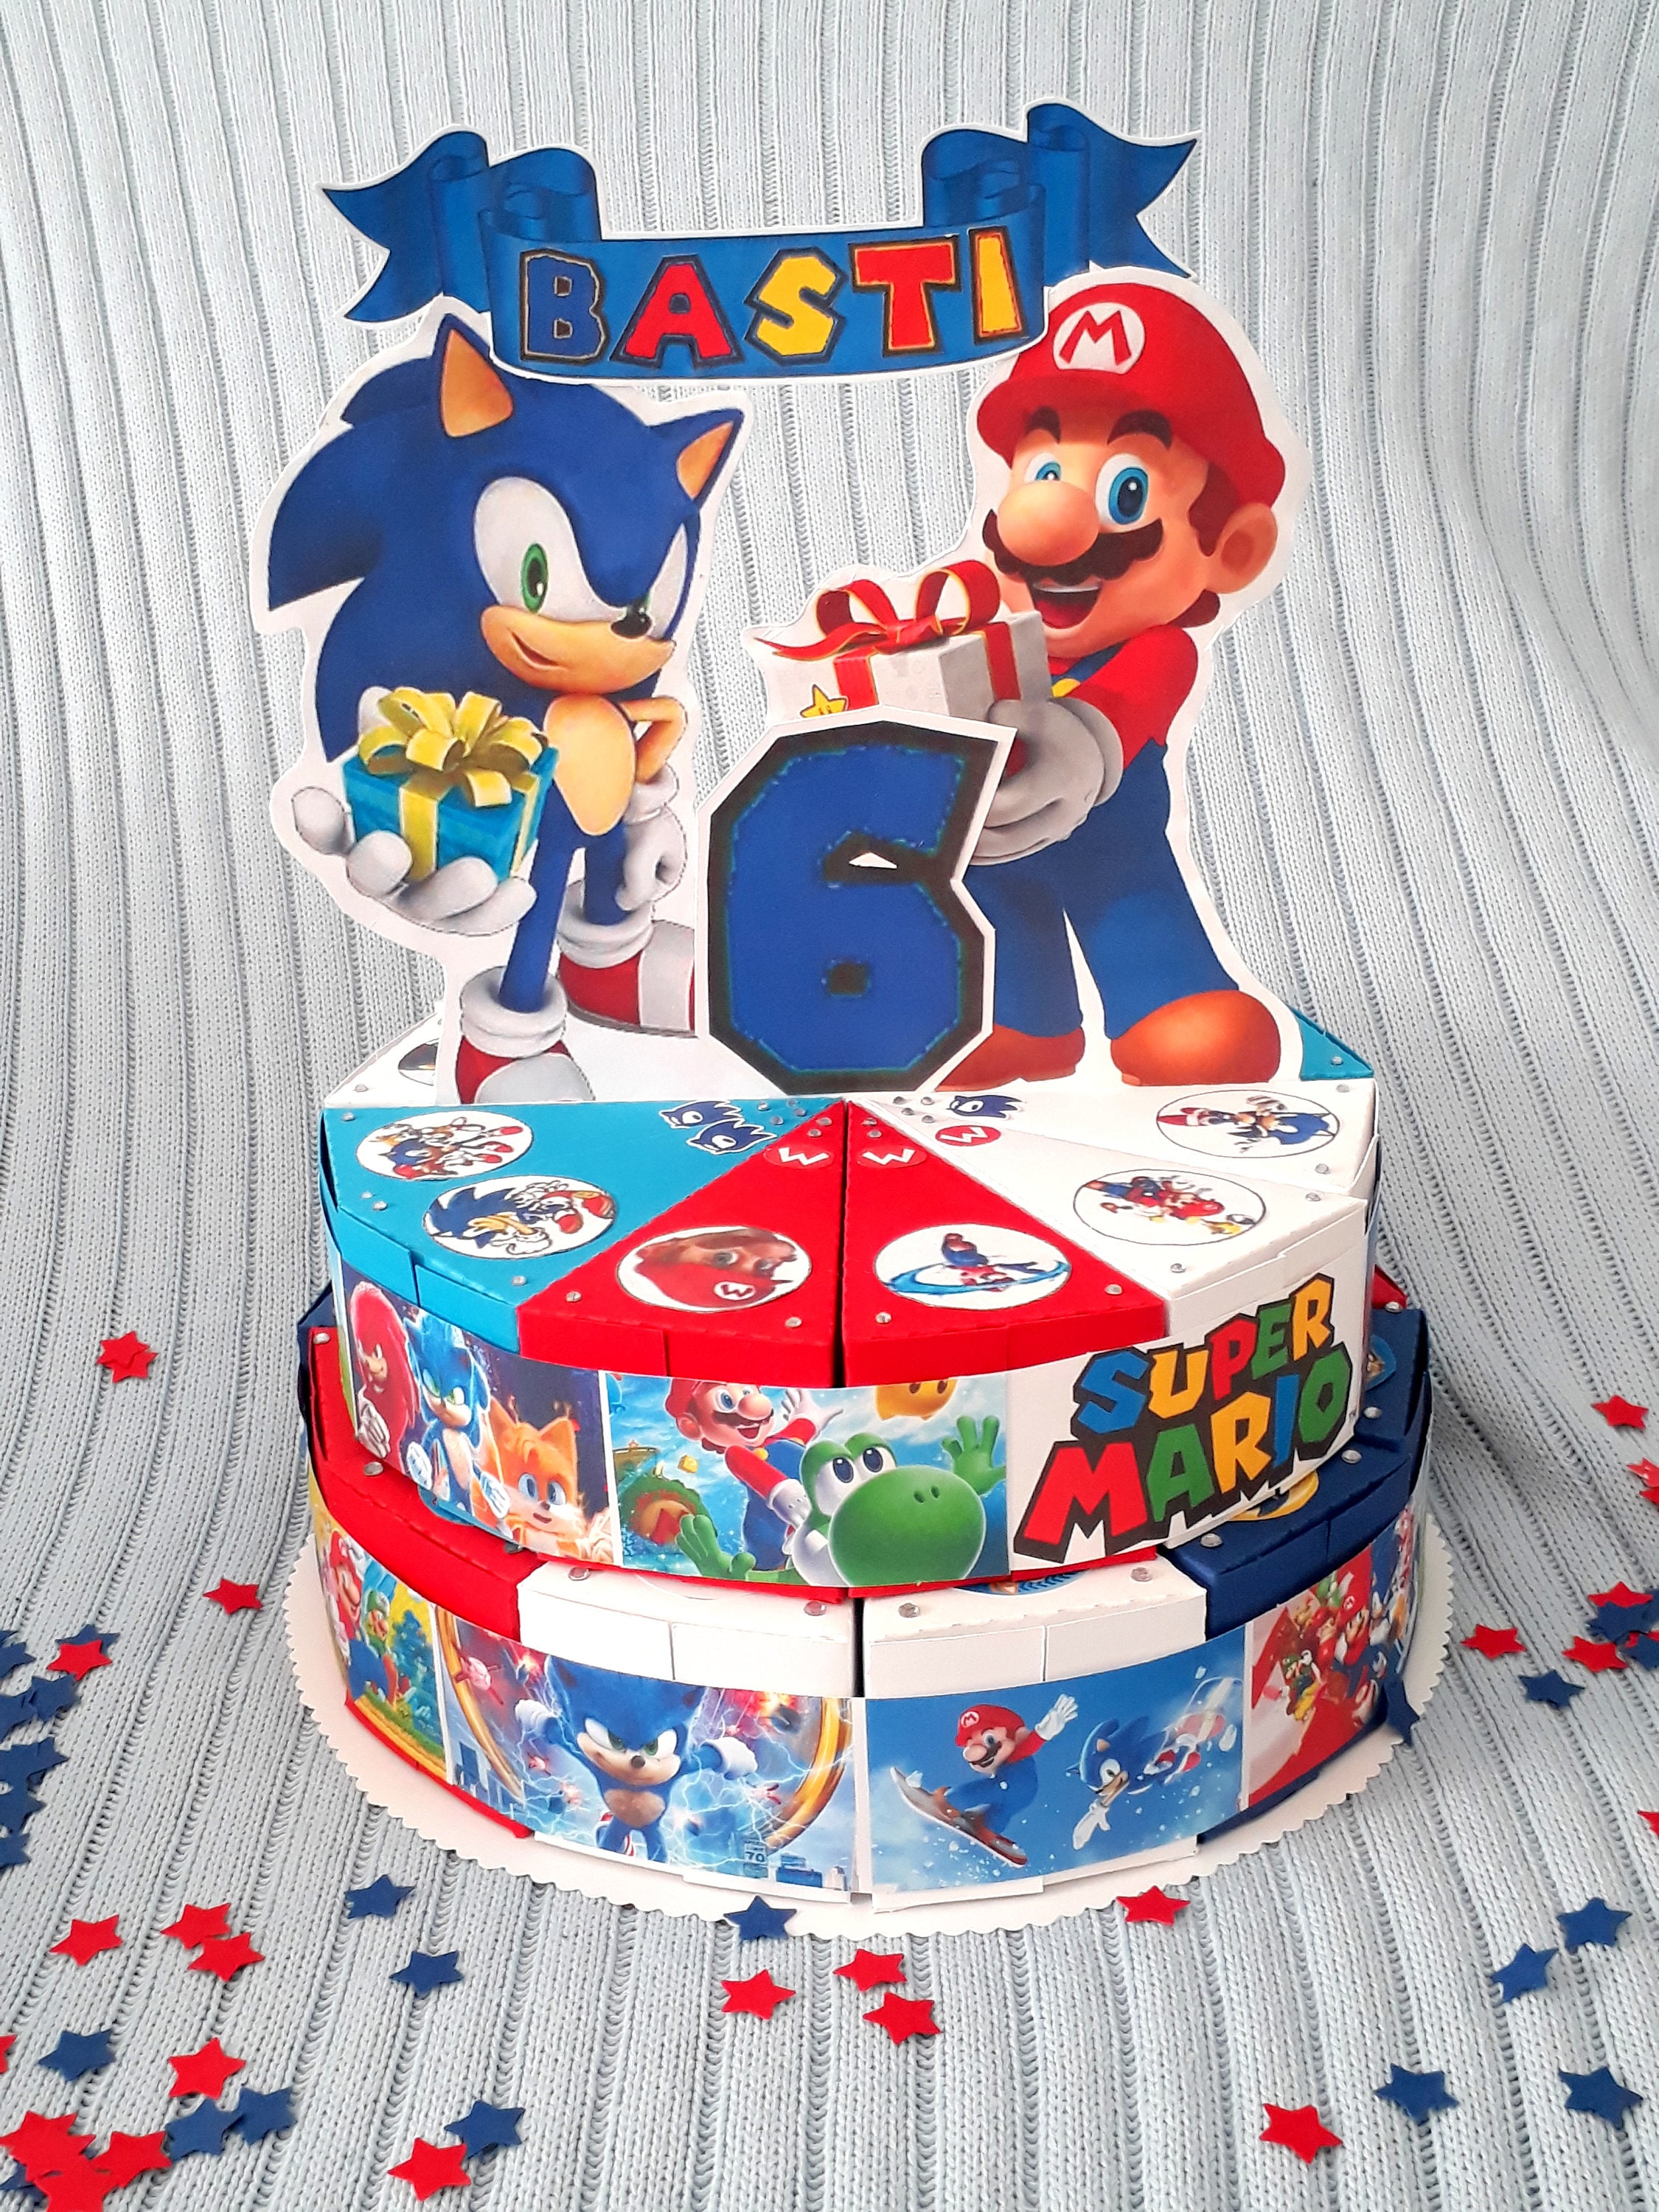 Torta di carta personalizzata Sonic & Mario, 12, 24 o 36 pezzi di torta,  scatola per torte, regali per bambini, feste di compleanno per bambini,  personalizzate -  Italia